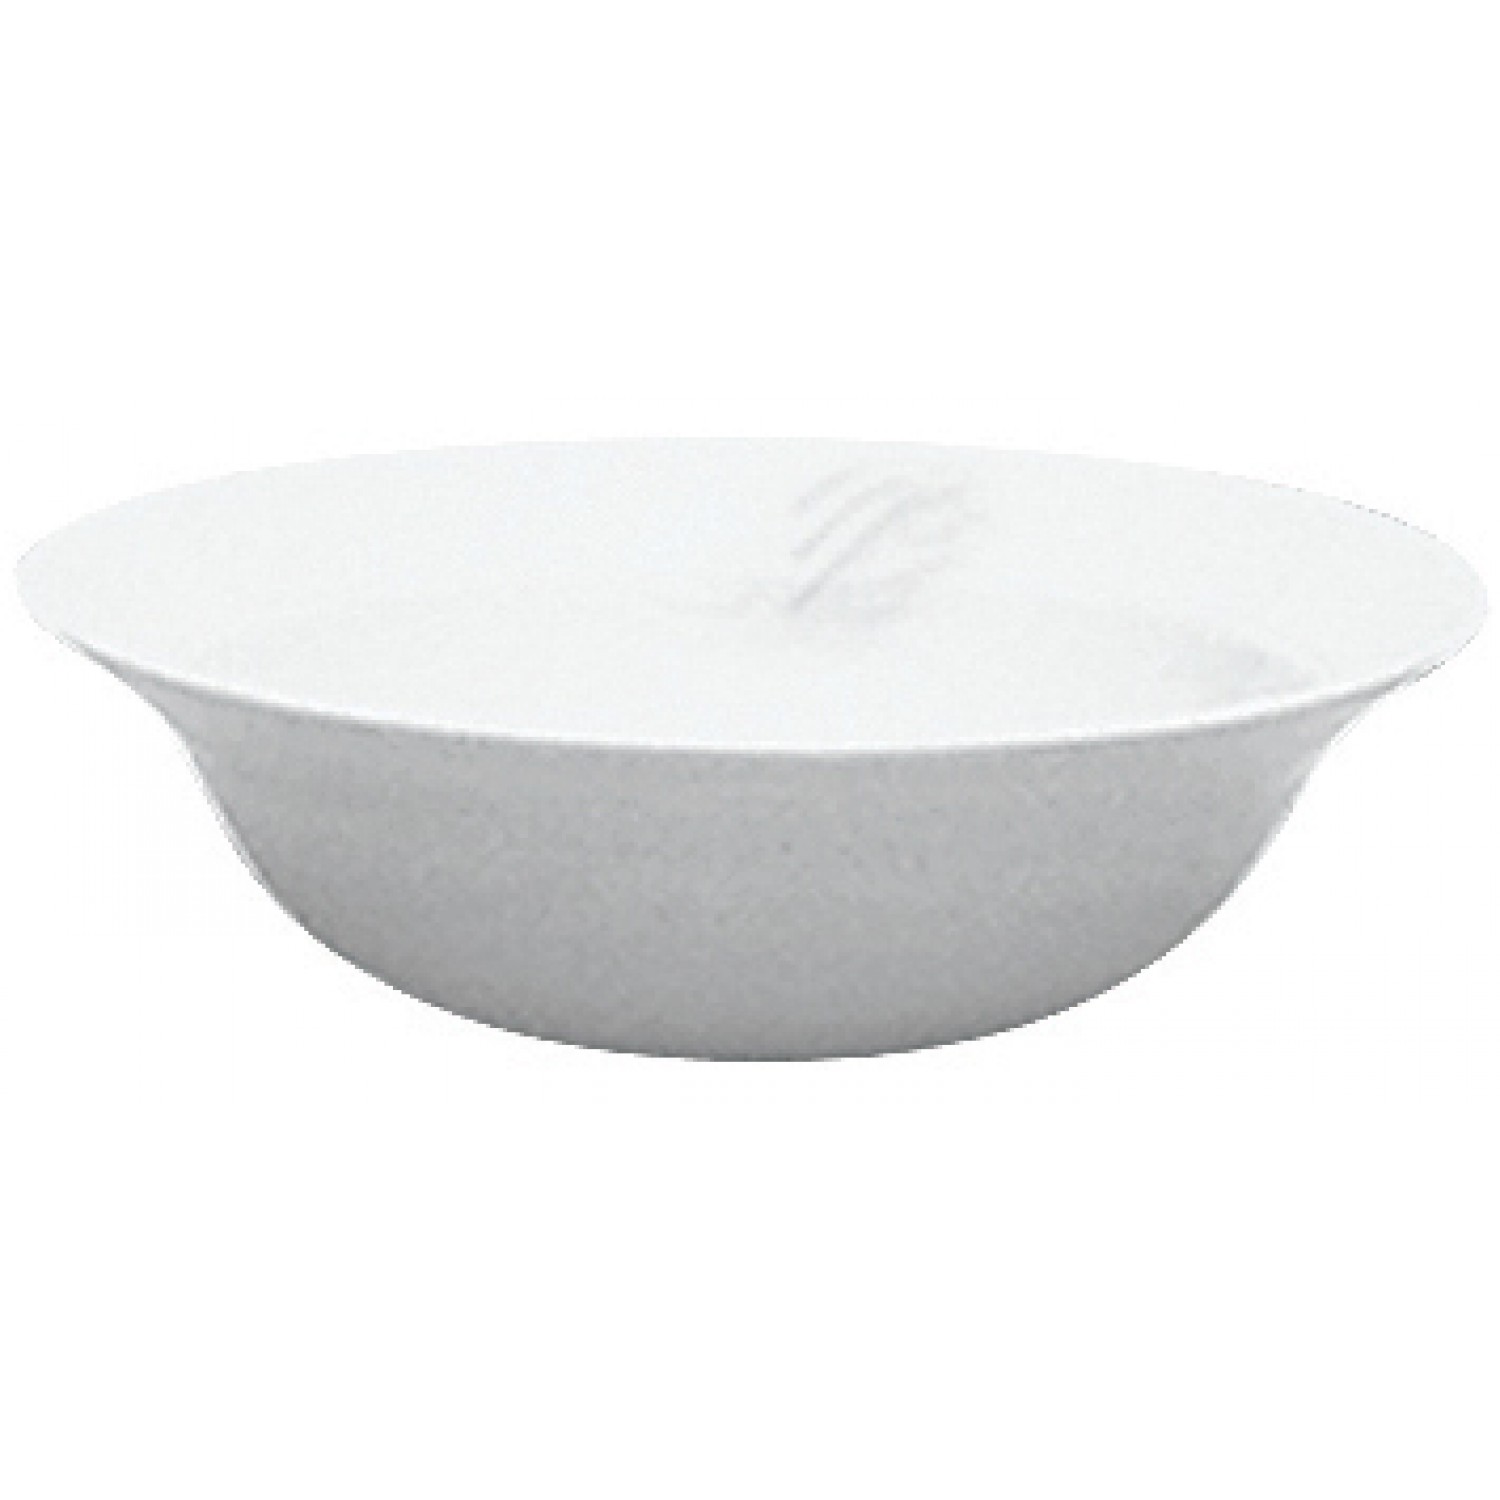 Μπολ | bowl Πορσελάνης Φ15cm Saturn Gural 52.44300